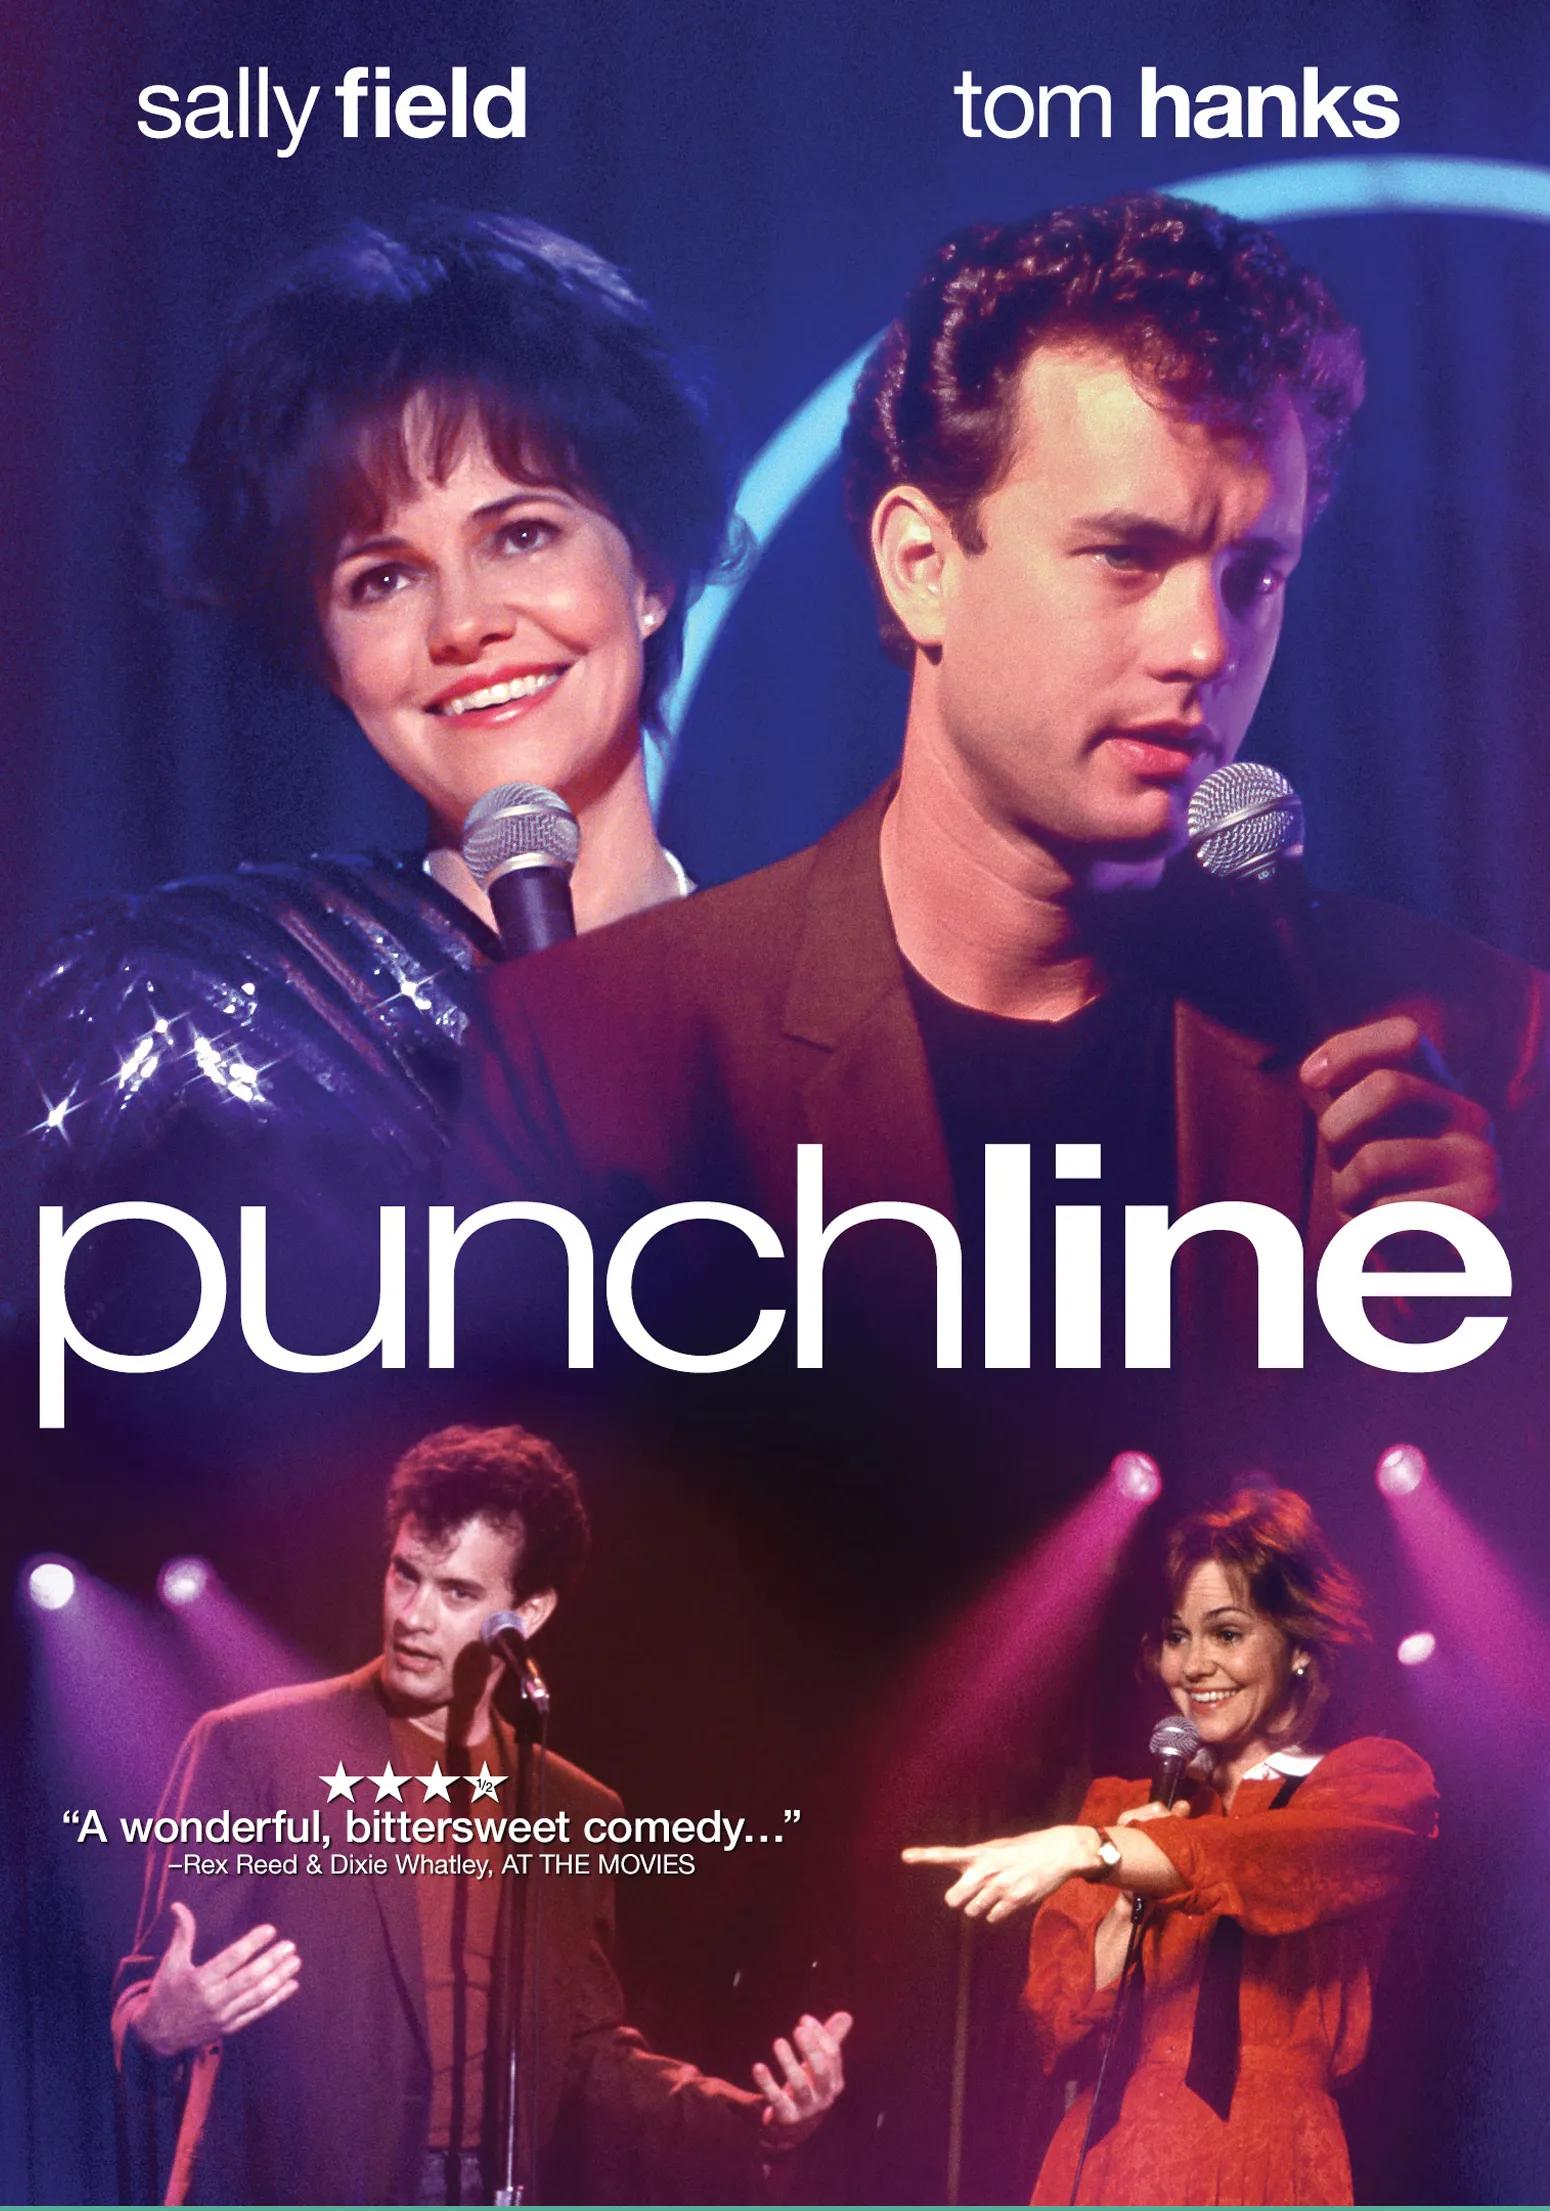 Punchline [DVD] [1988] - Best Buy